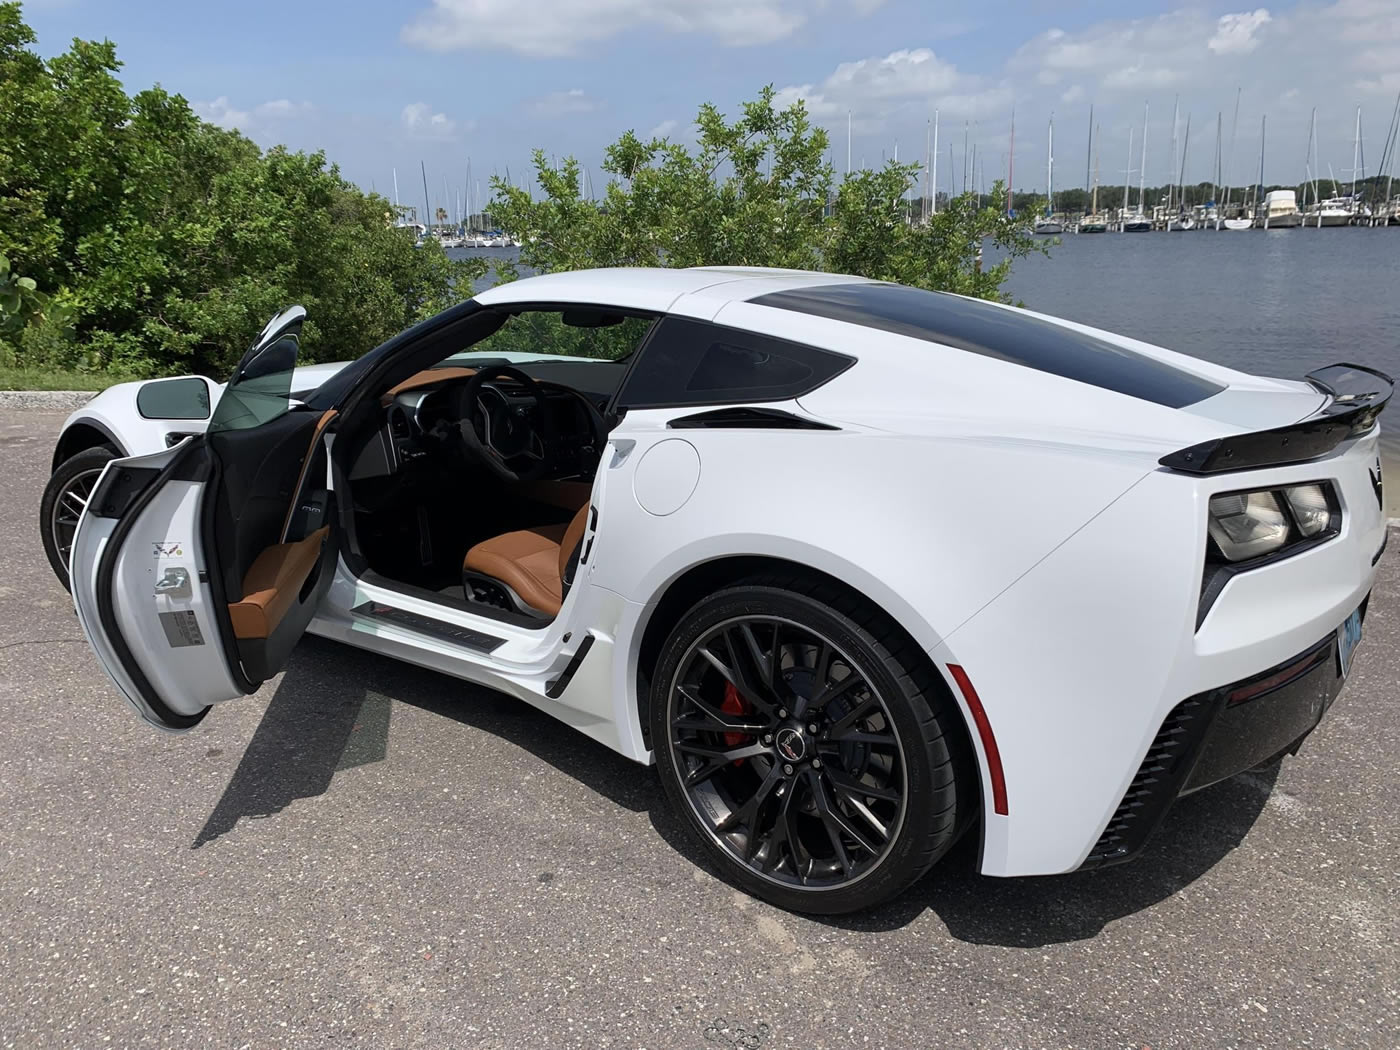 2015 Corvette Z06 3LZ Coupe in Arctic White